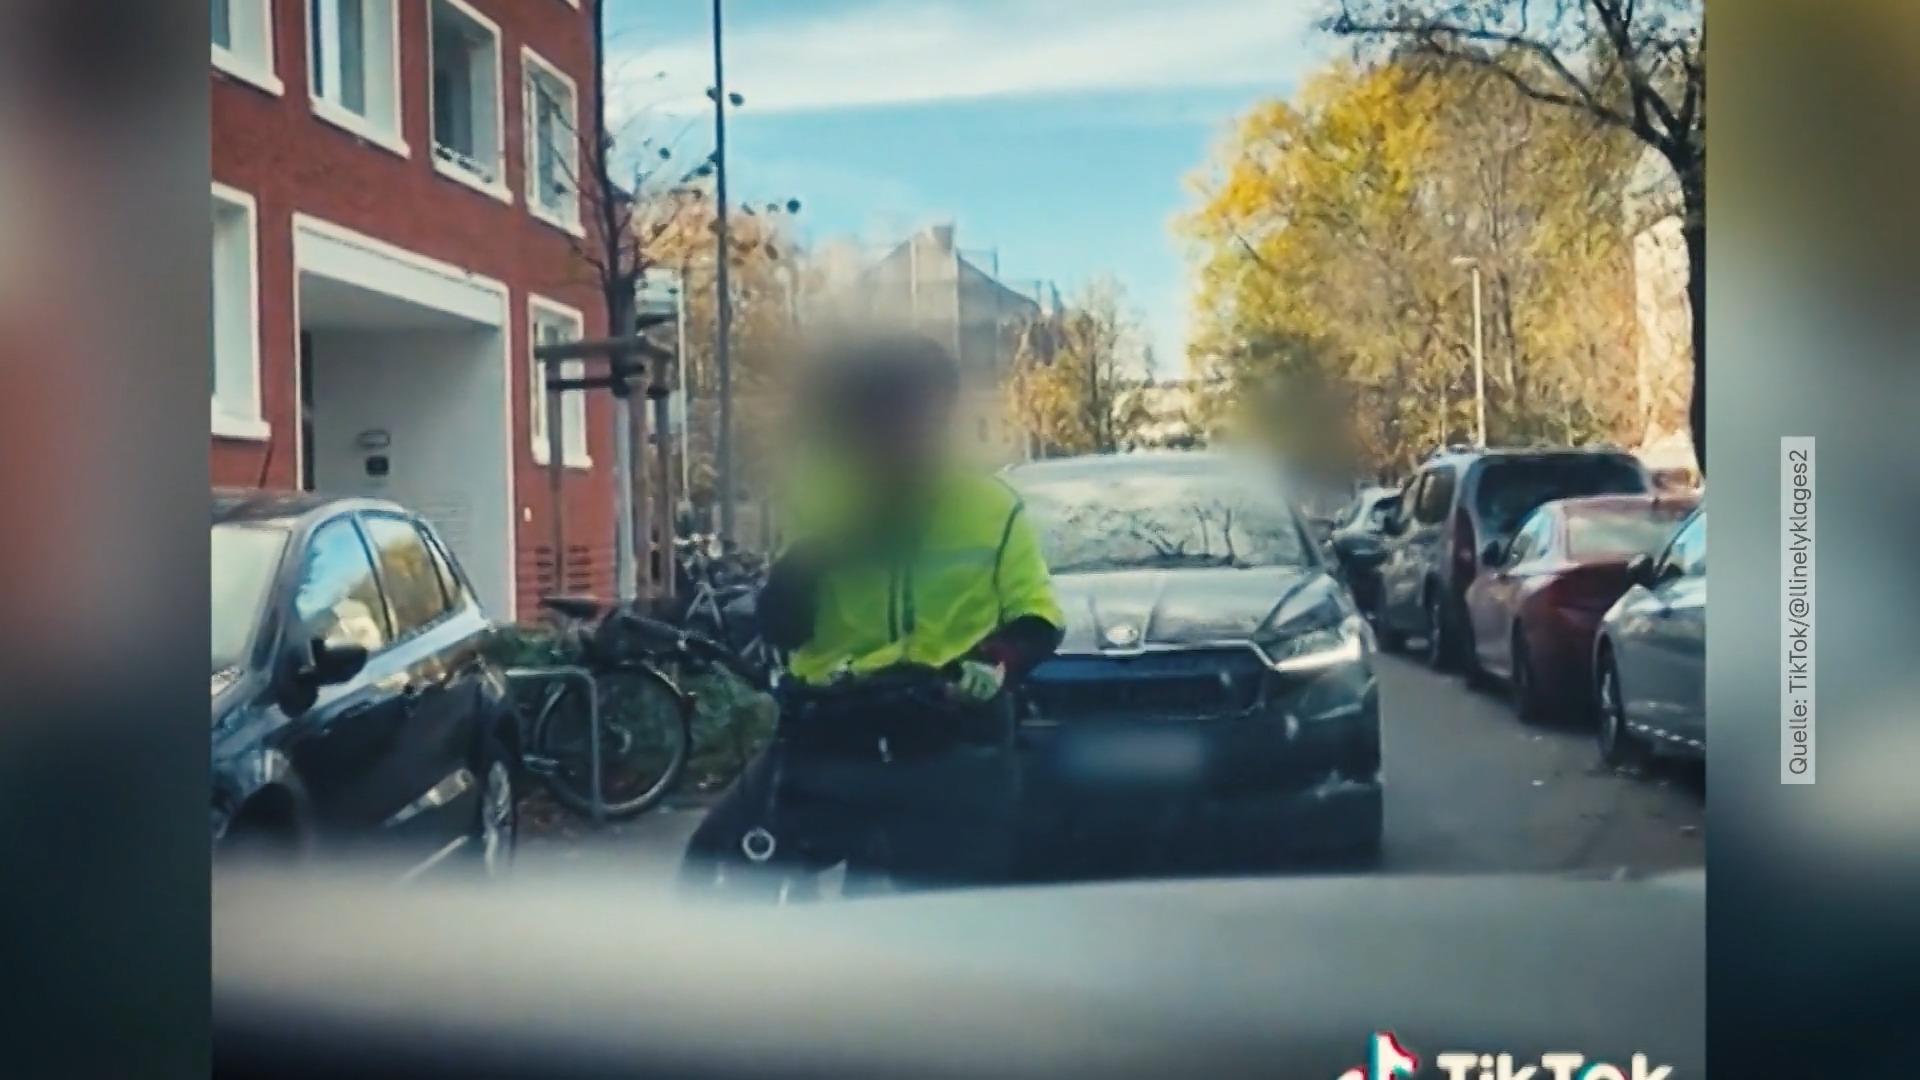 Radfahrer gegen Autofahrer - Krisenregion Straße Video mit keifender Radfahrerin